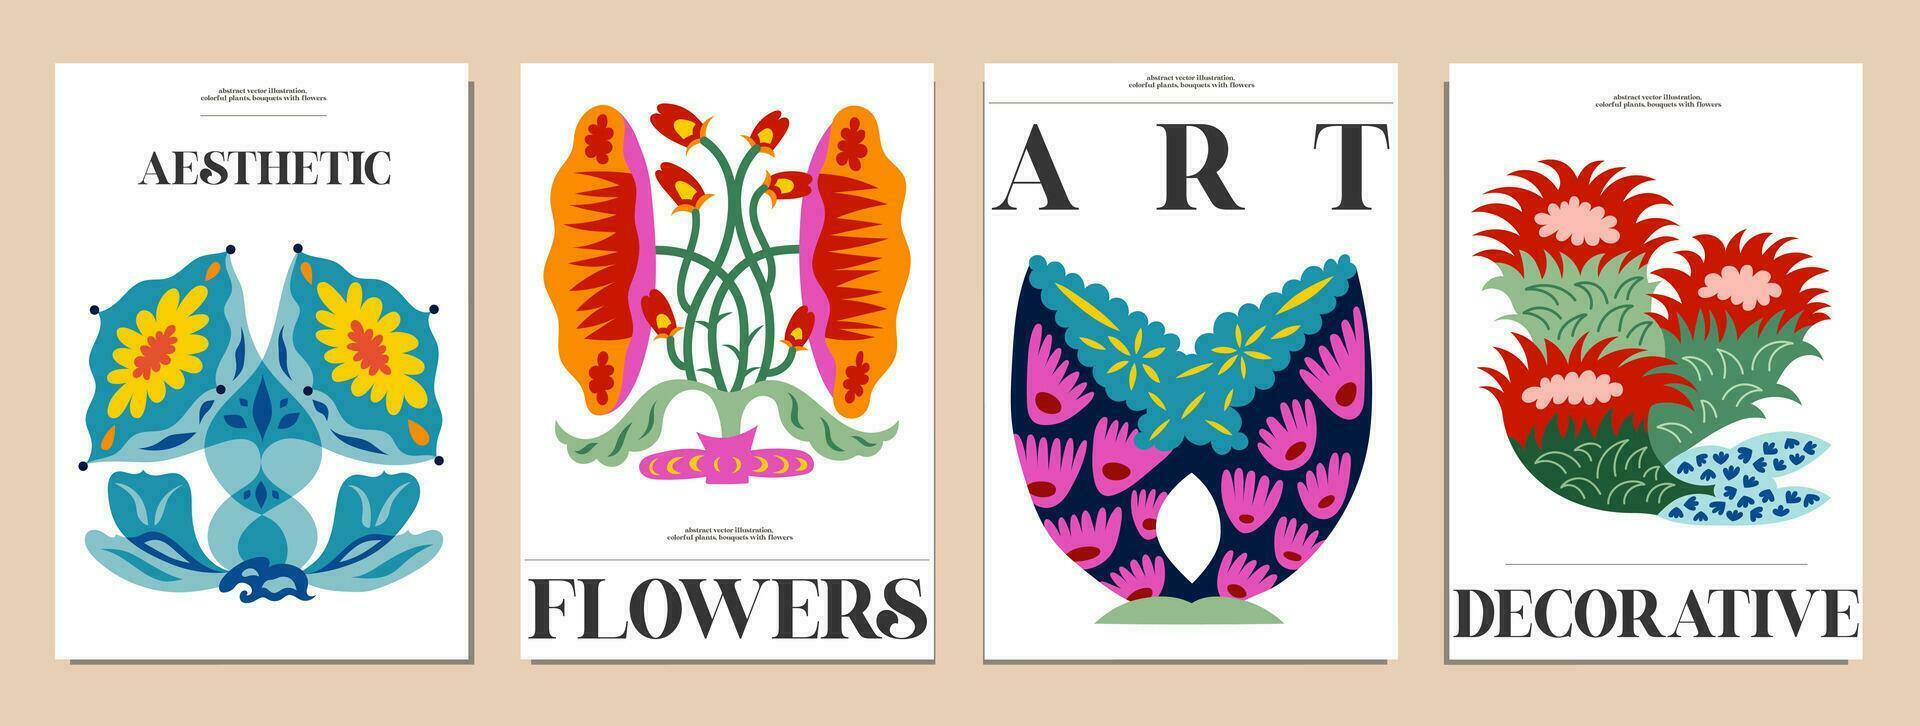 uppsättning av buketter med blommor. interiör målning. färgrik illustrationer av blommor för täcker, bilder. vektor illustration.